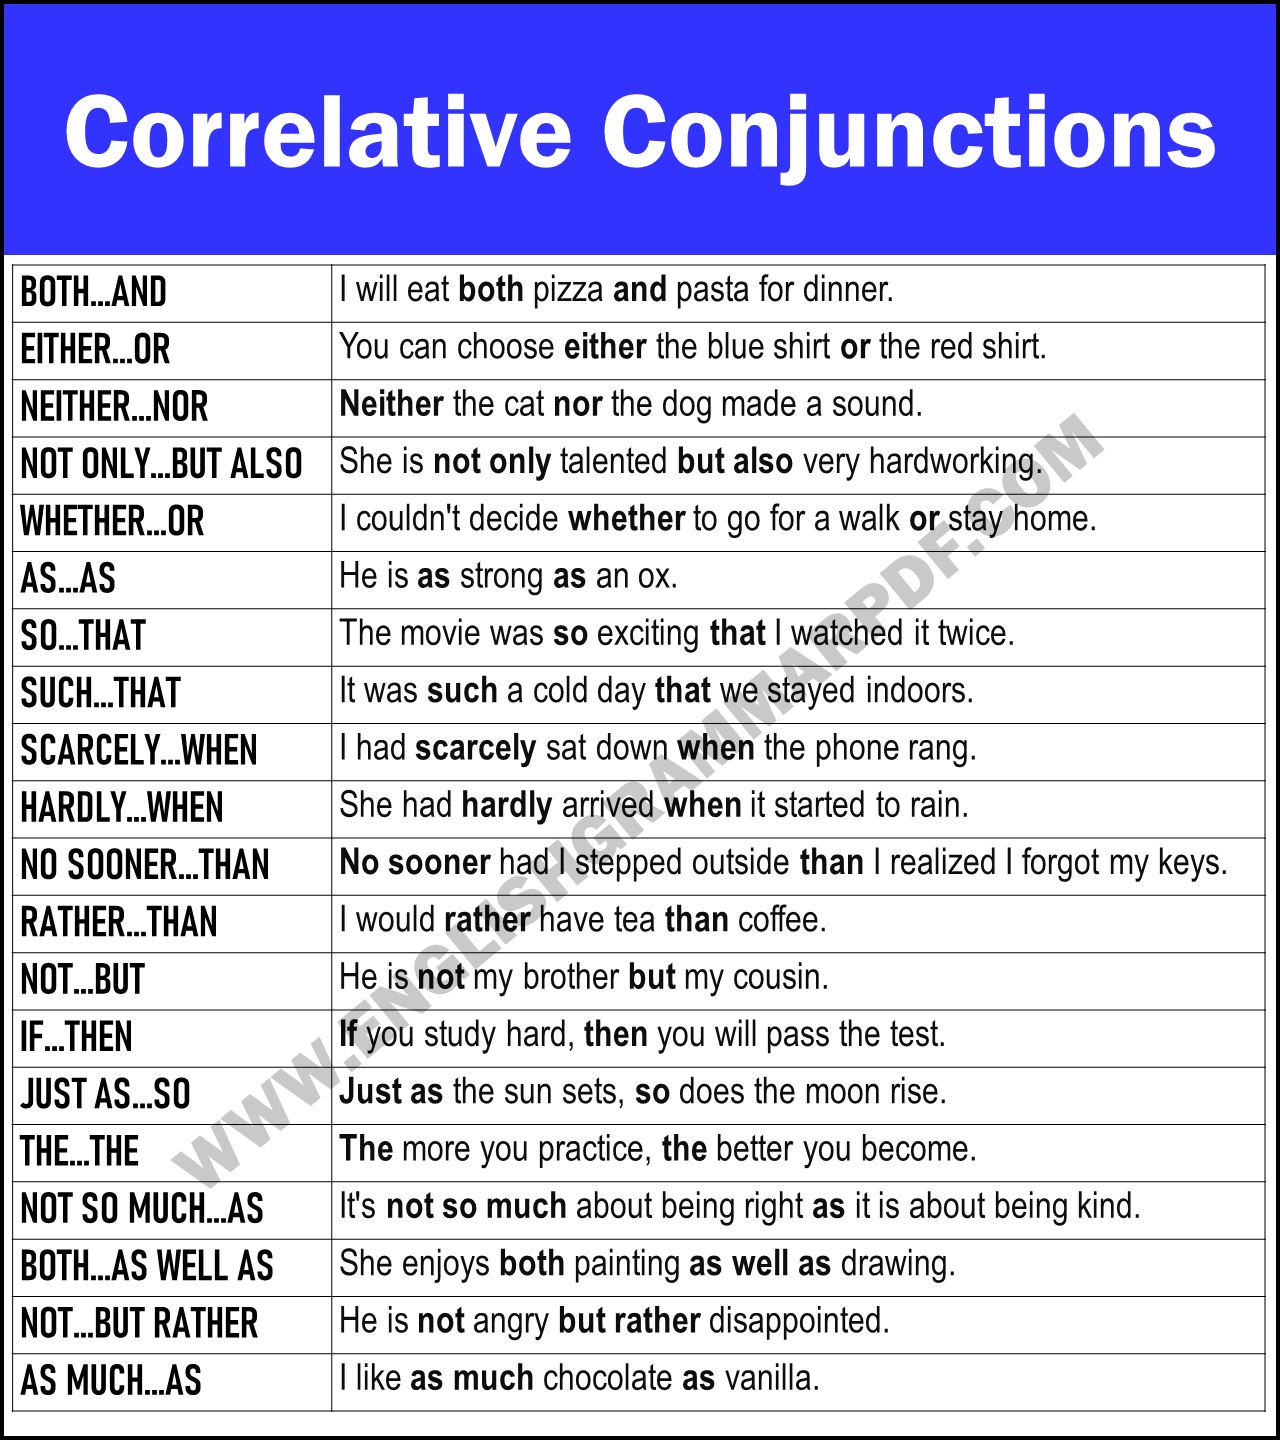 Correlative Conjunctions